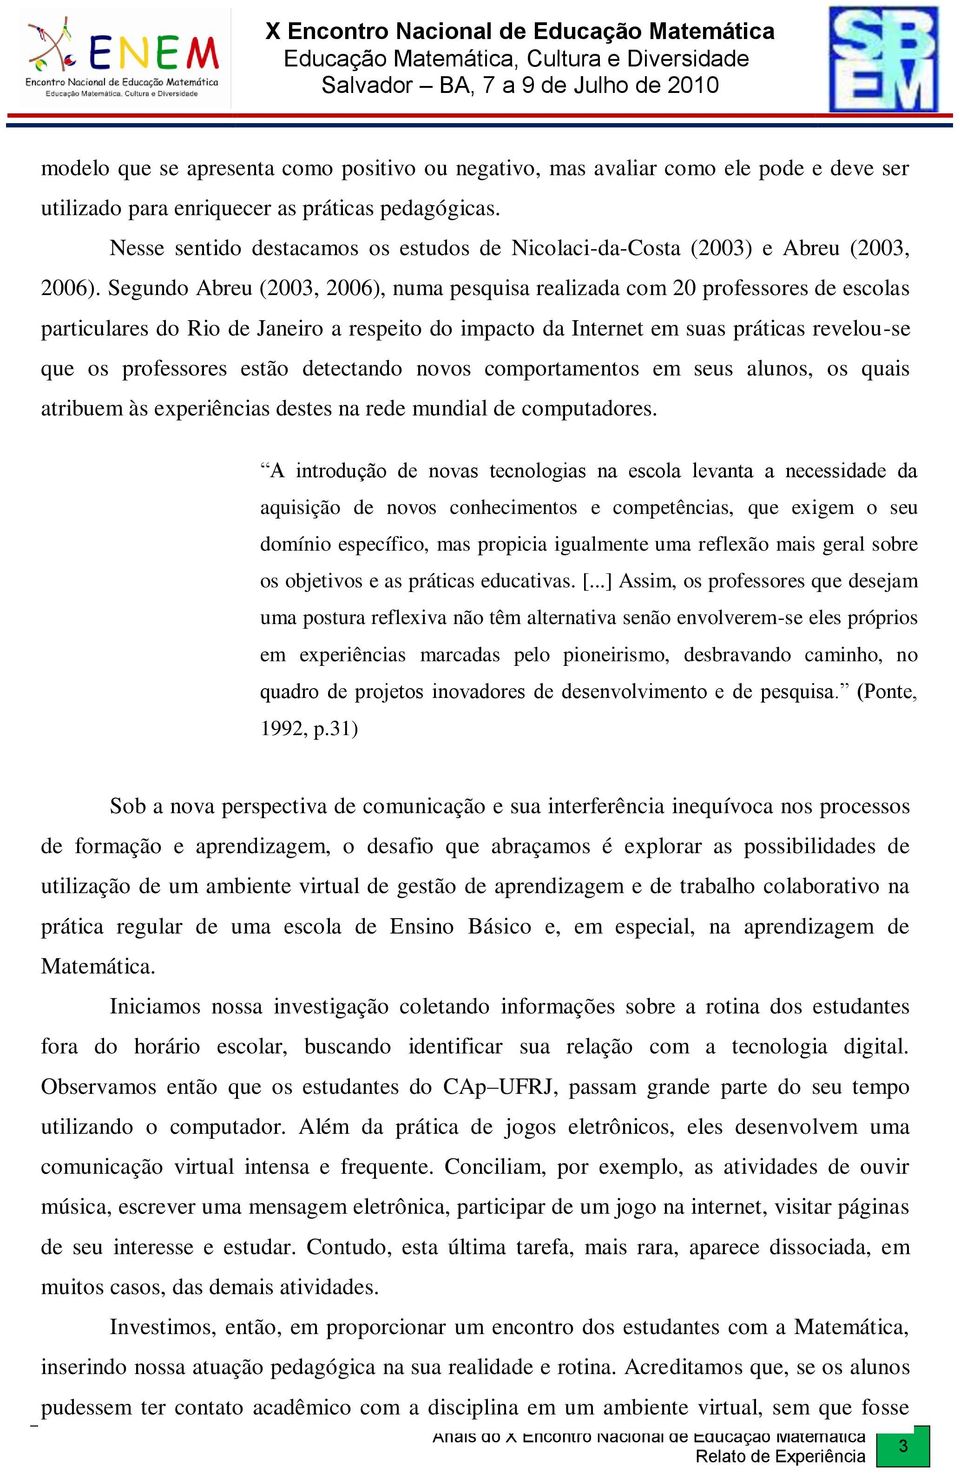 Segundo Abreu (2003, 2006), numa pesquisa realizada com 20 professores de escolas particulares do Rio de Janeiro a respeito do impacto da Internet em suas práticas revelou-se que os professores estão